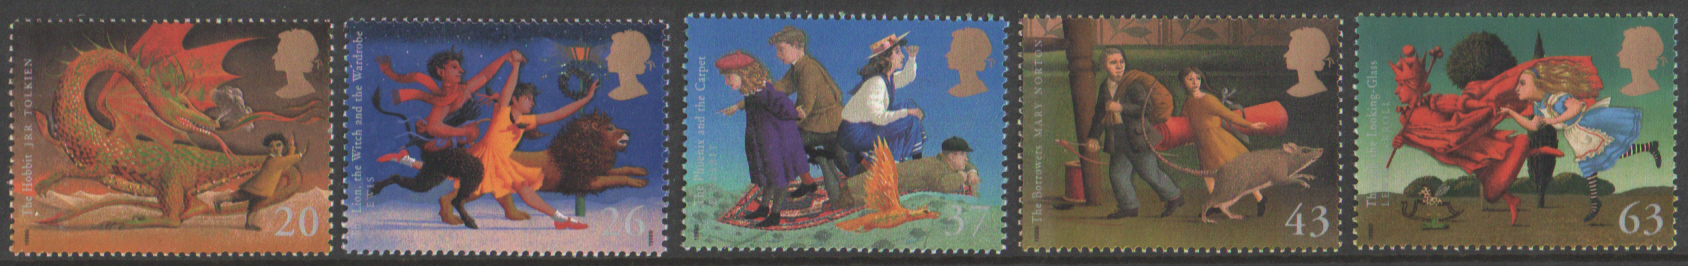 (image for) SG2050 / 54 1998 Children's Fantasy Novels unmounted mint set of 5